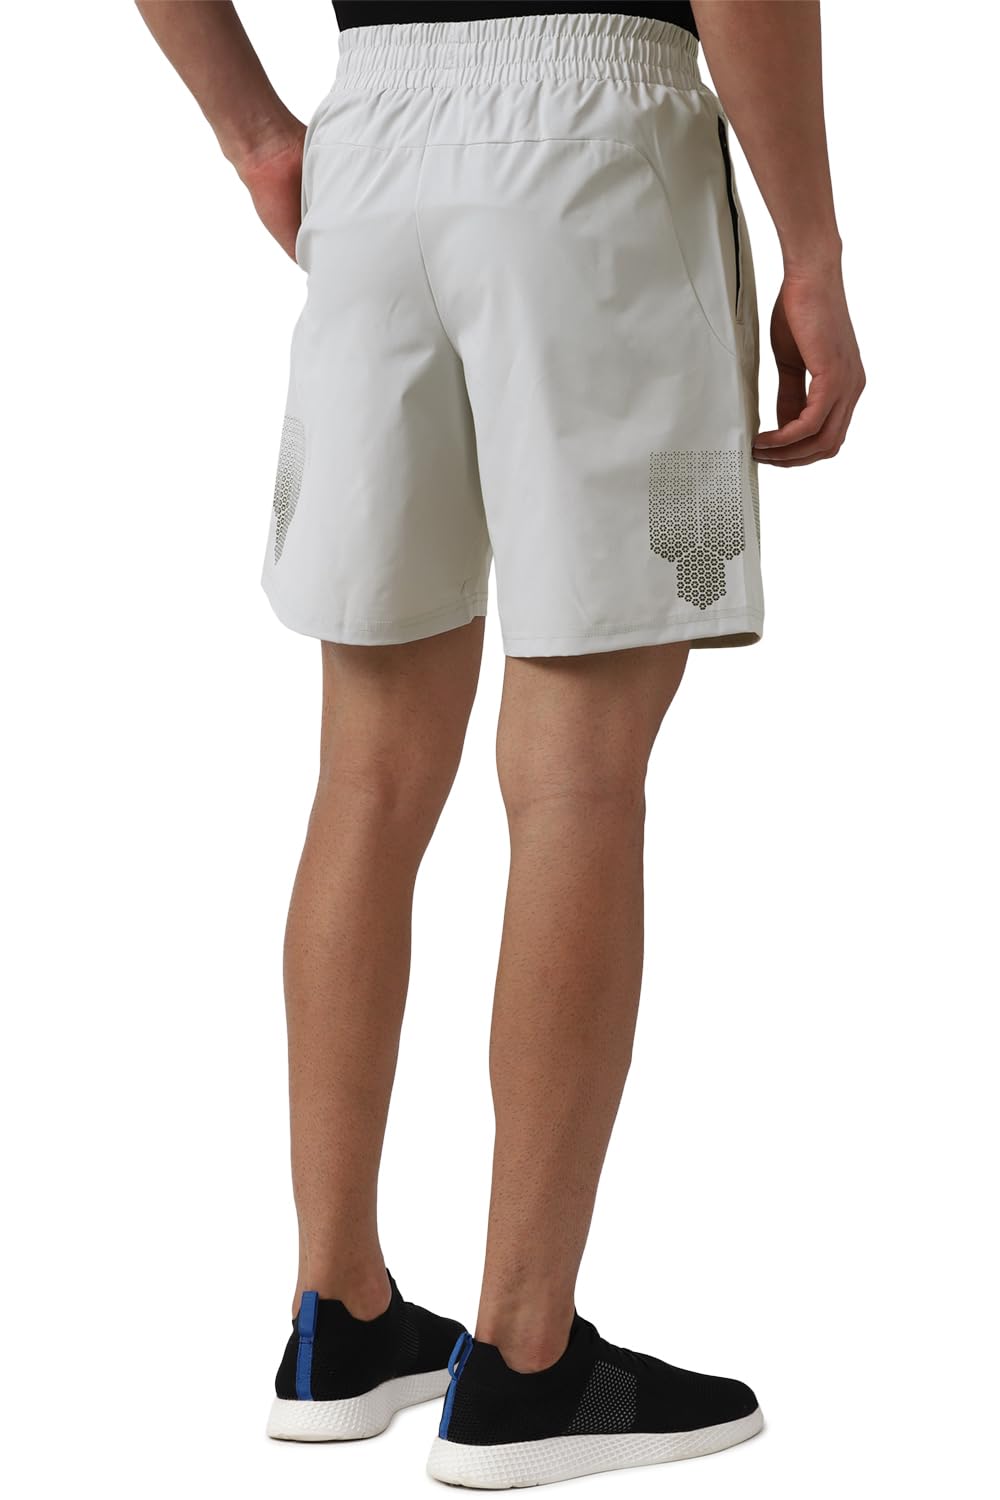 Van Heusen Men's Bermuda Shorts (VFLOAATFS00596_Grey